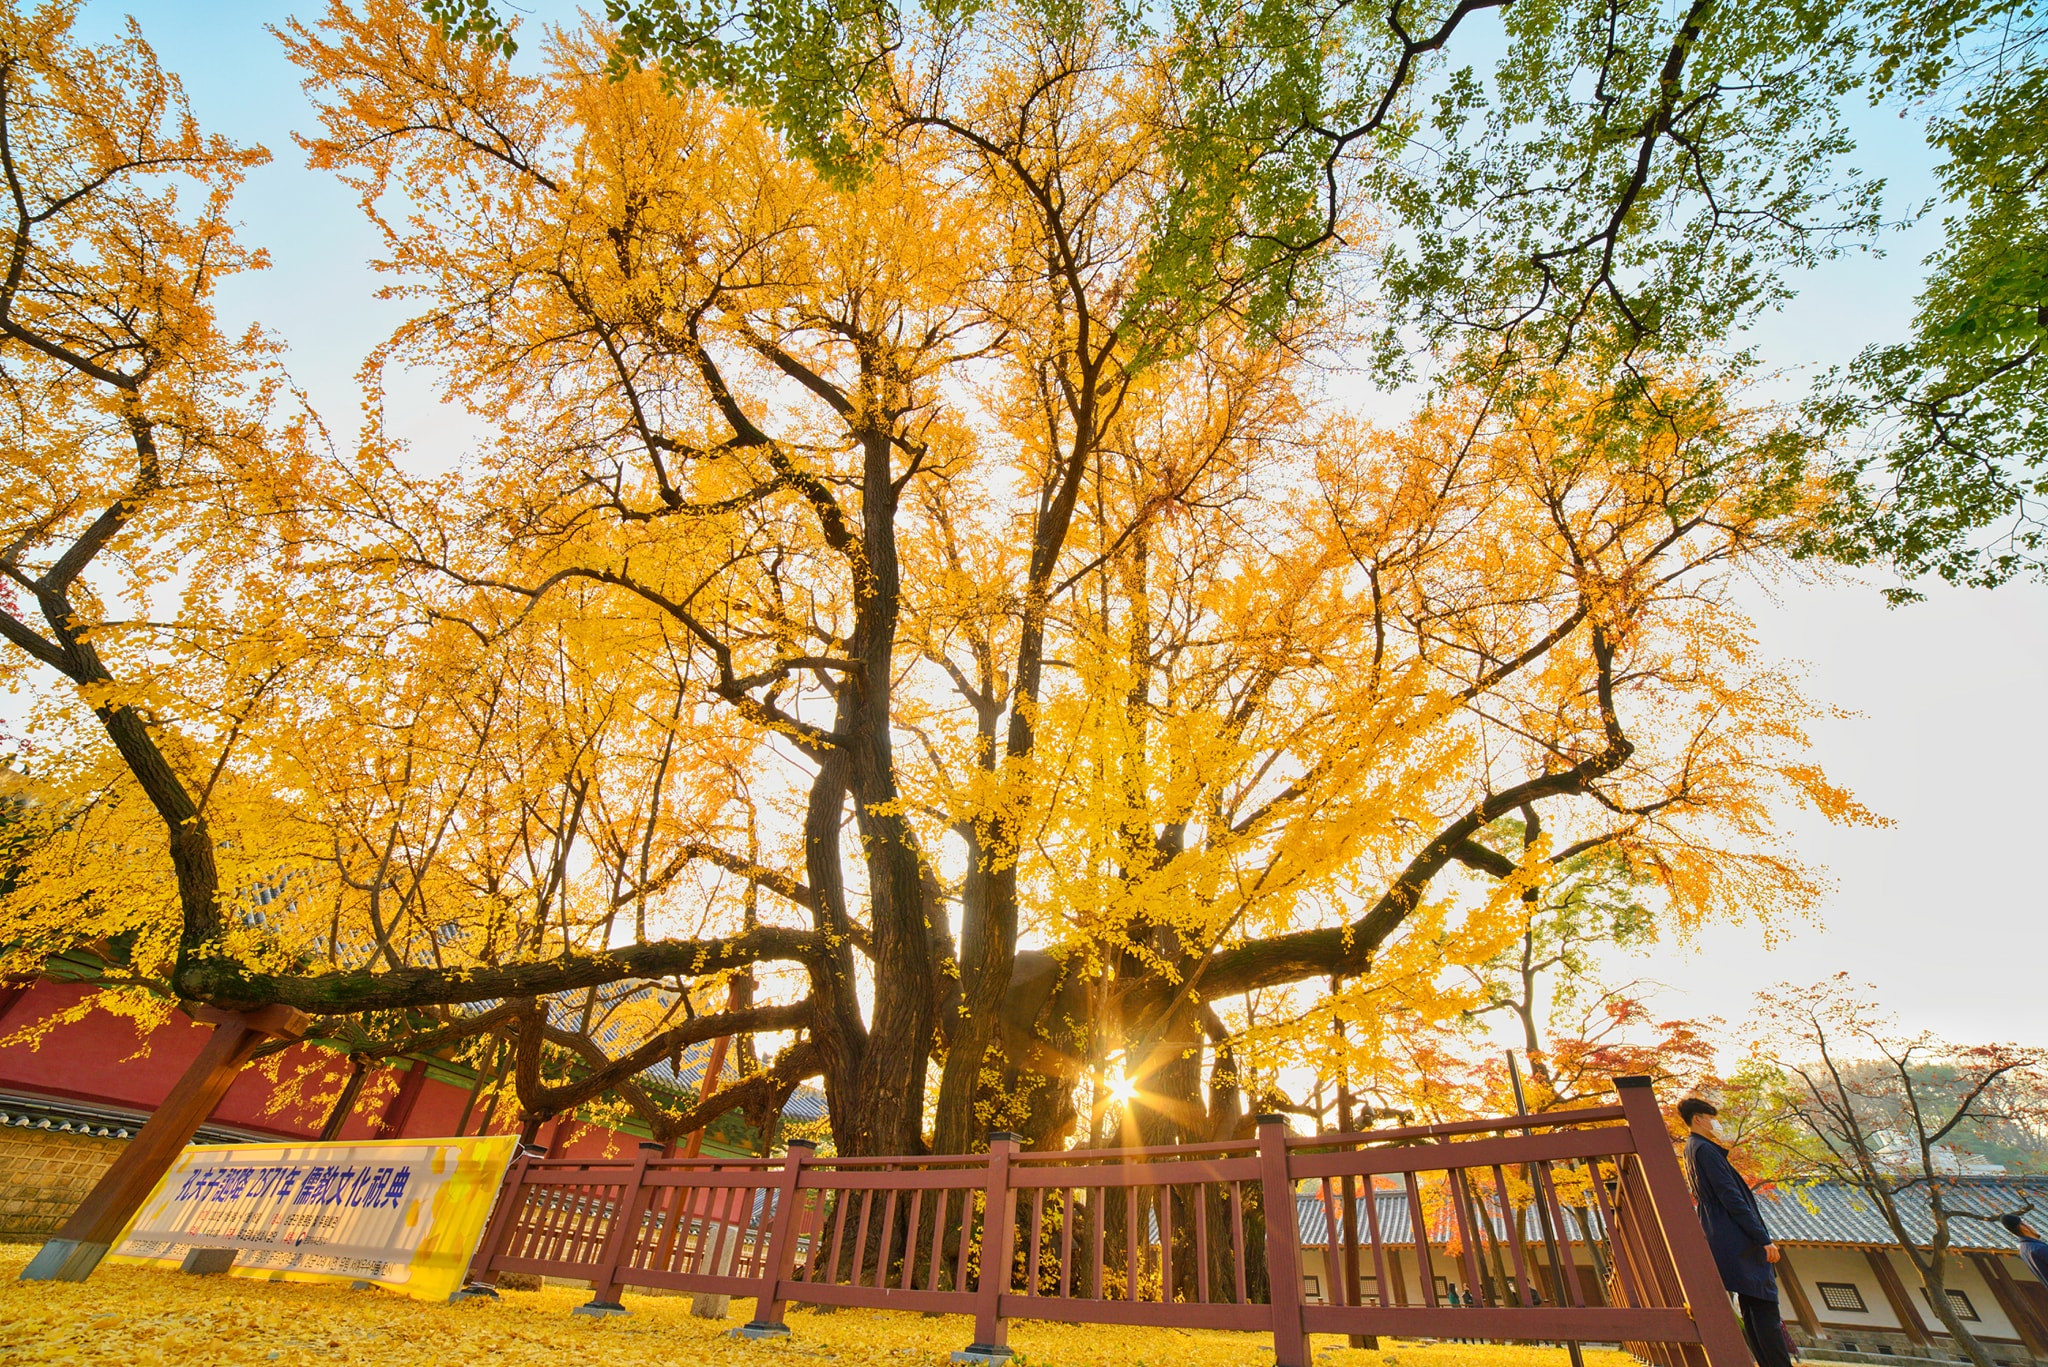 Mùa thu Hàn Quốc: Tận hưởng khí trời mát mẻ và sắc thu tuyệt đẹp ở Hàn Quốc. Cảnh quan núi rừng thay đổi màu sắc, lễ hội chào đón mùa thu và ẩm thực đặc sắc sẽ làm say đắm lòng du khách.